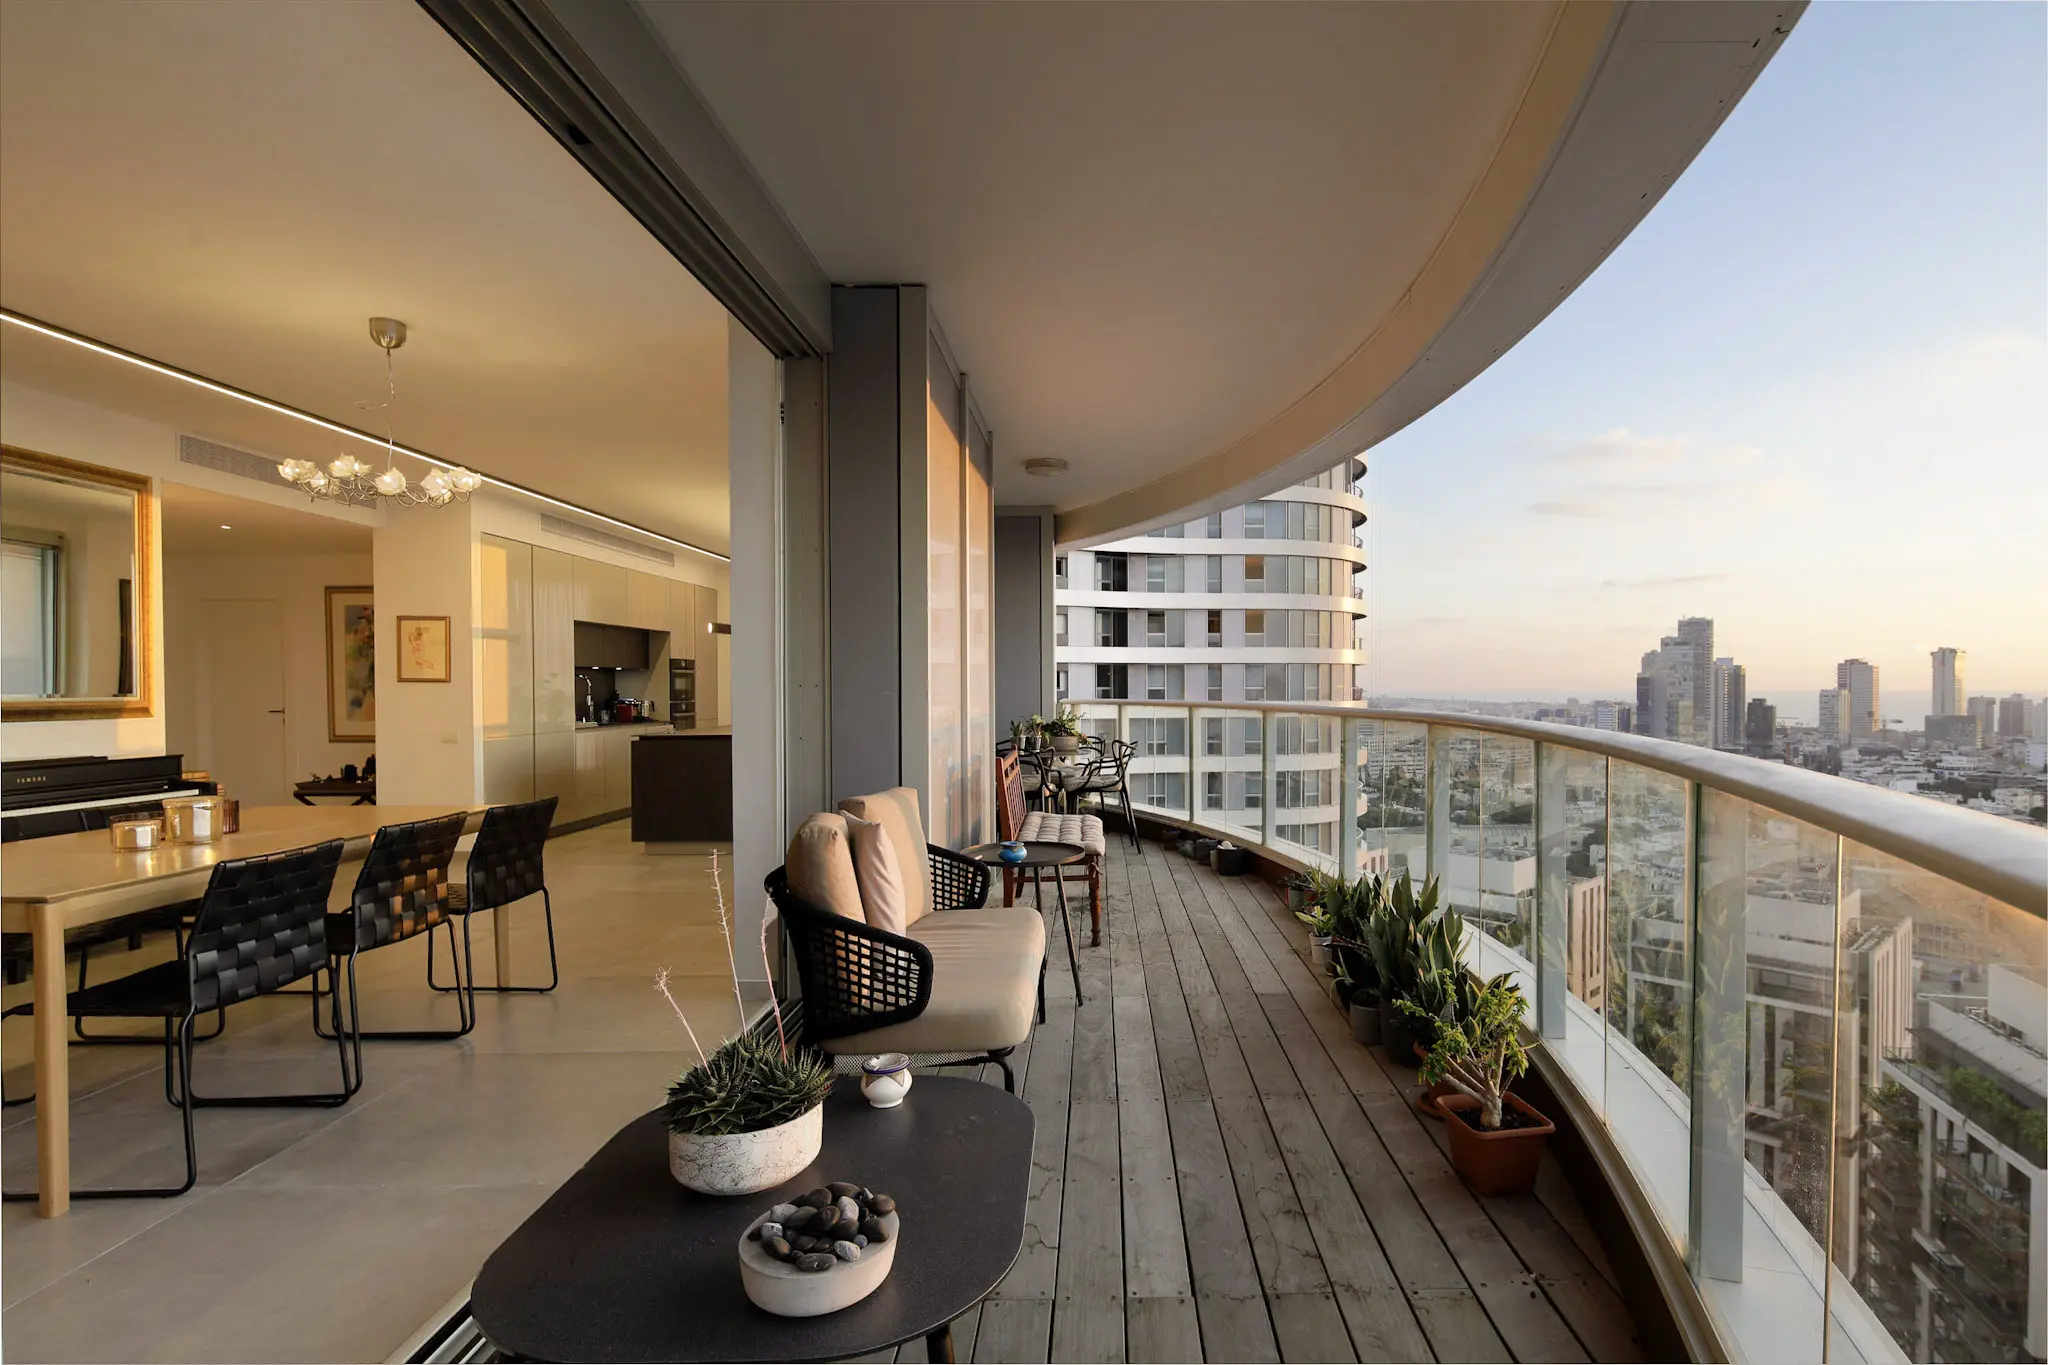 Tel Aviv Luxury Apartments for sale: Tel Aviv Luxury Apartments for sale